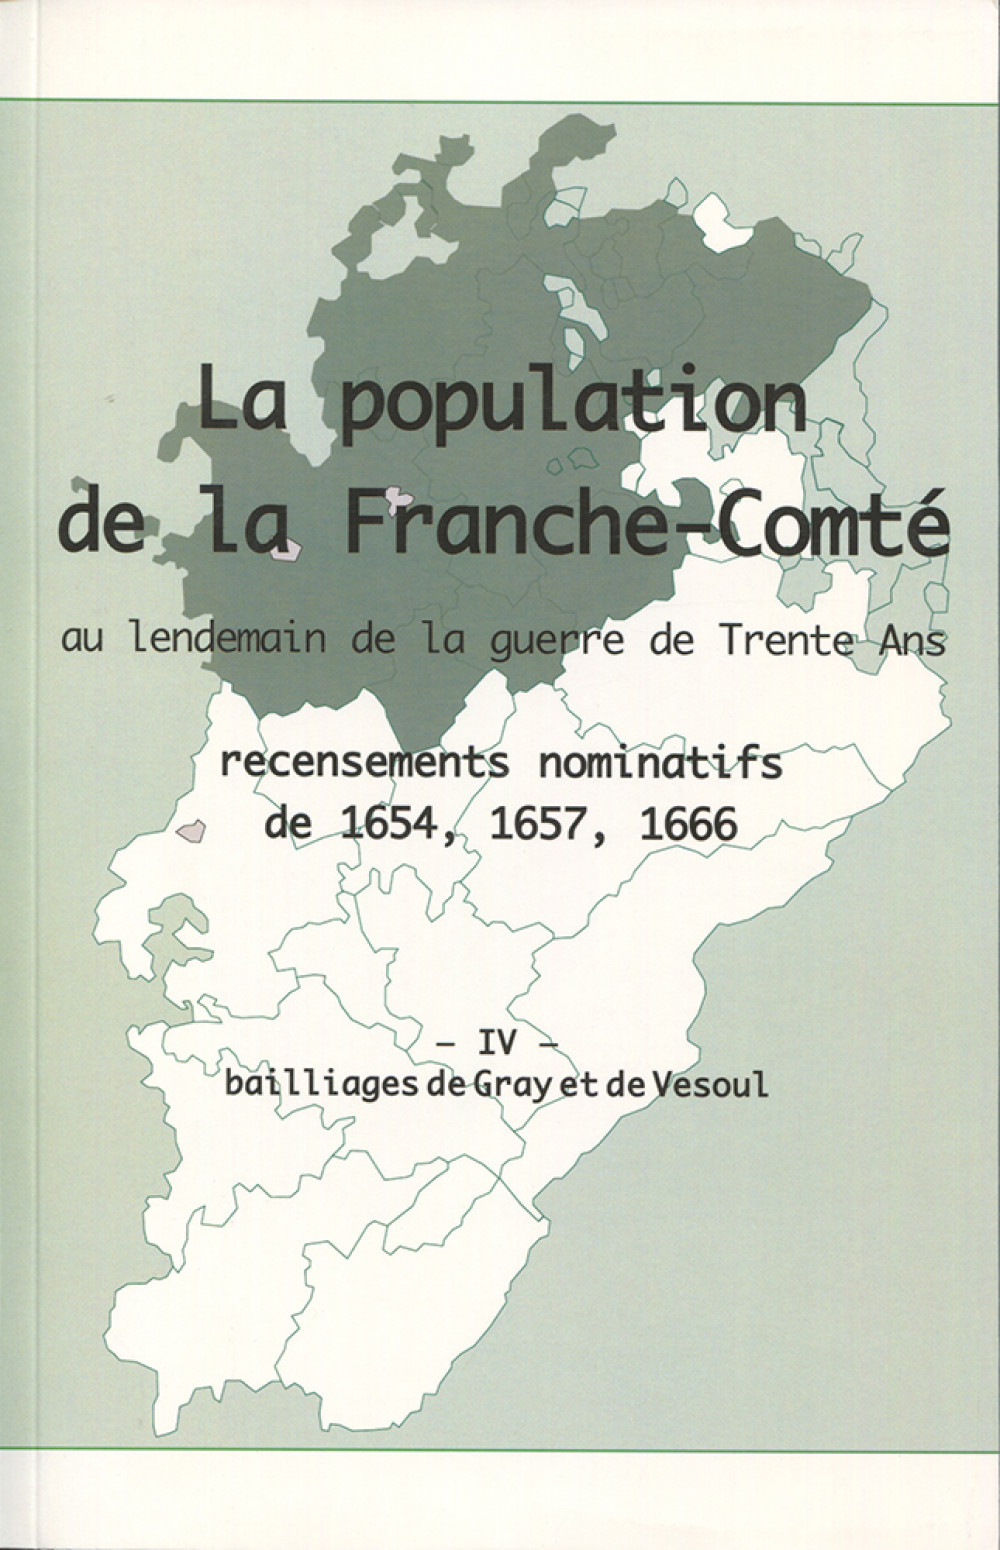 La population en Franche-Comté au lendemain de la guerre de Trente Ans. Tome IV